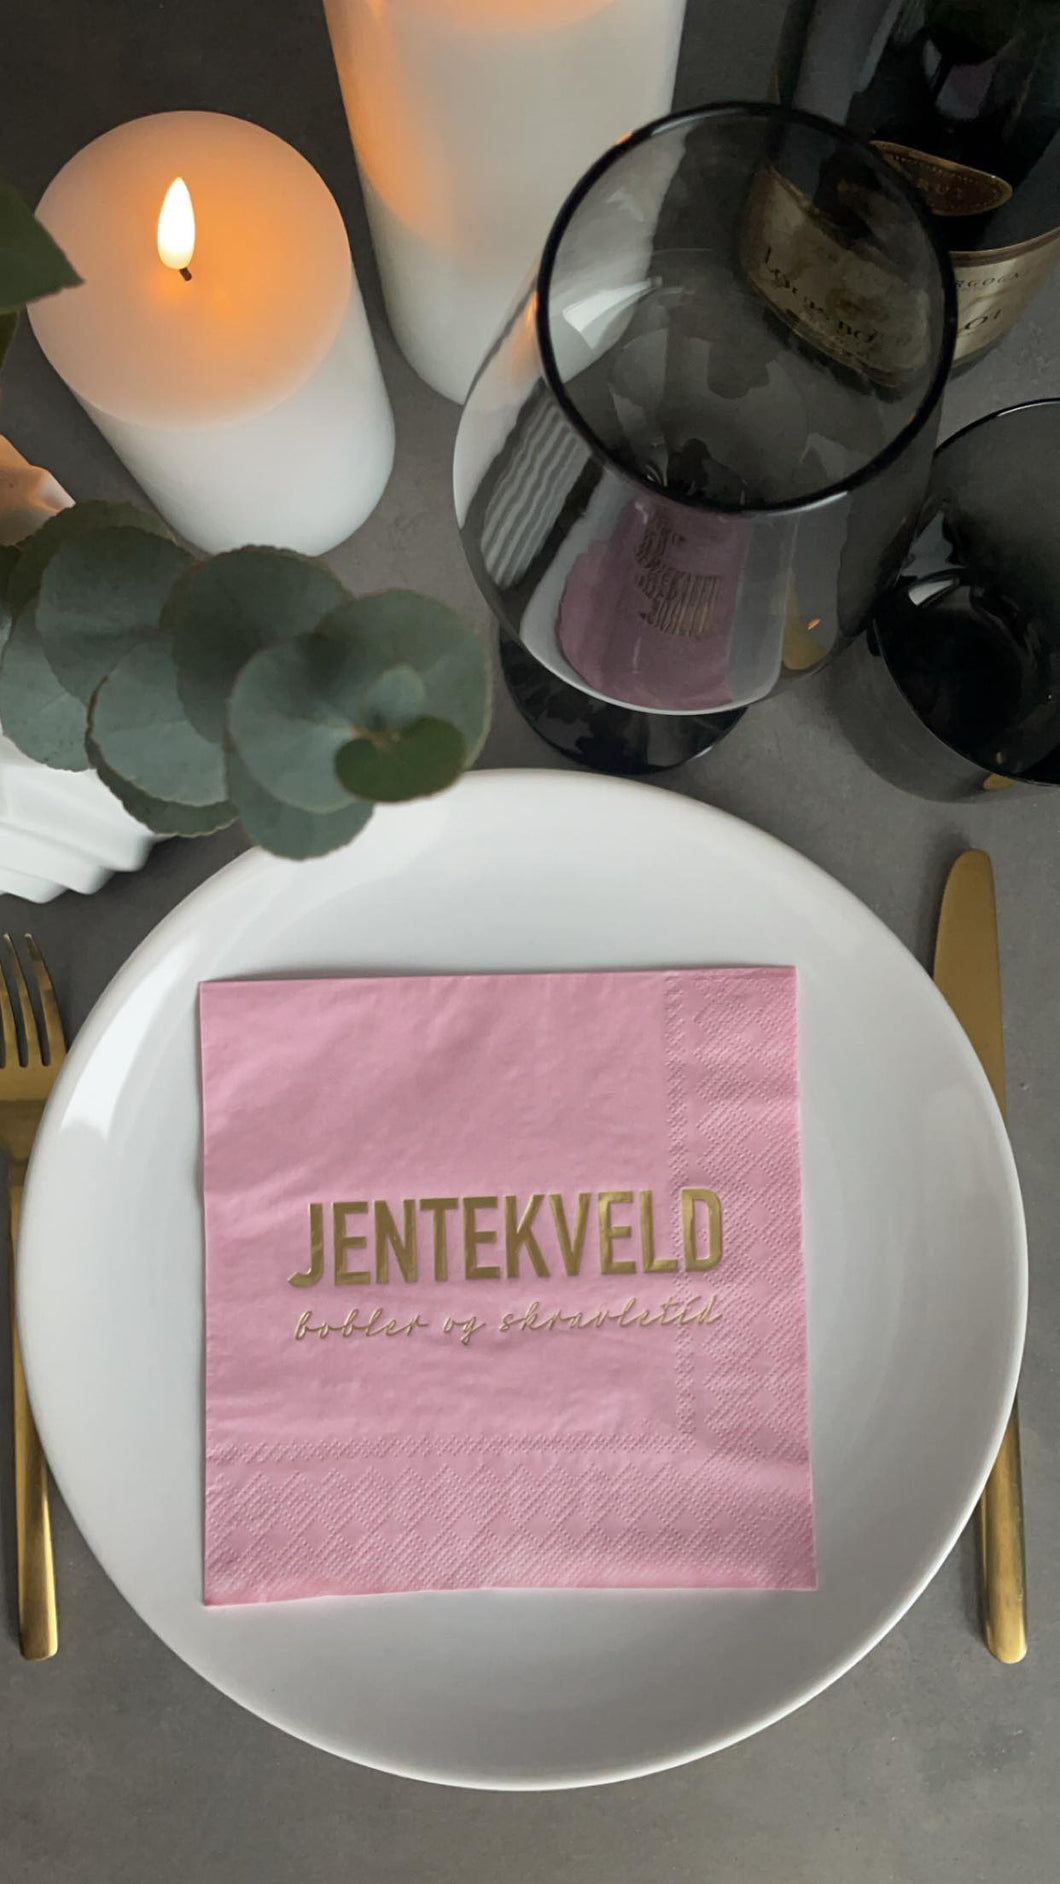 3-lags rosa serviett med gull tekst - Jentekveld bobler & skravletid